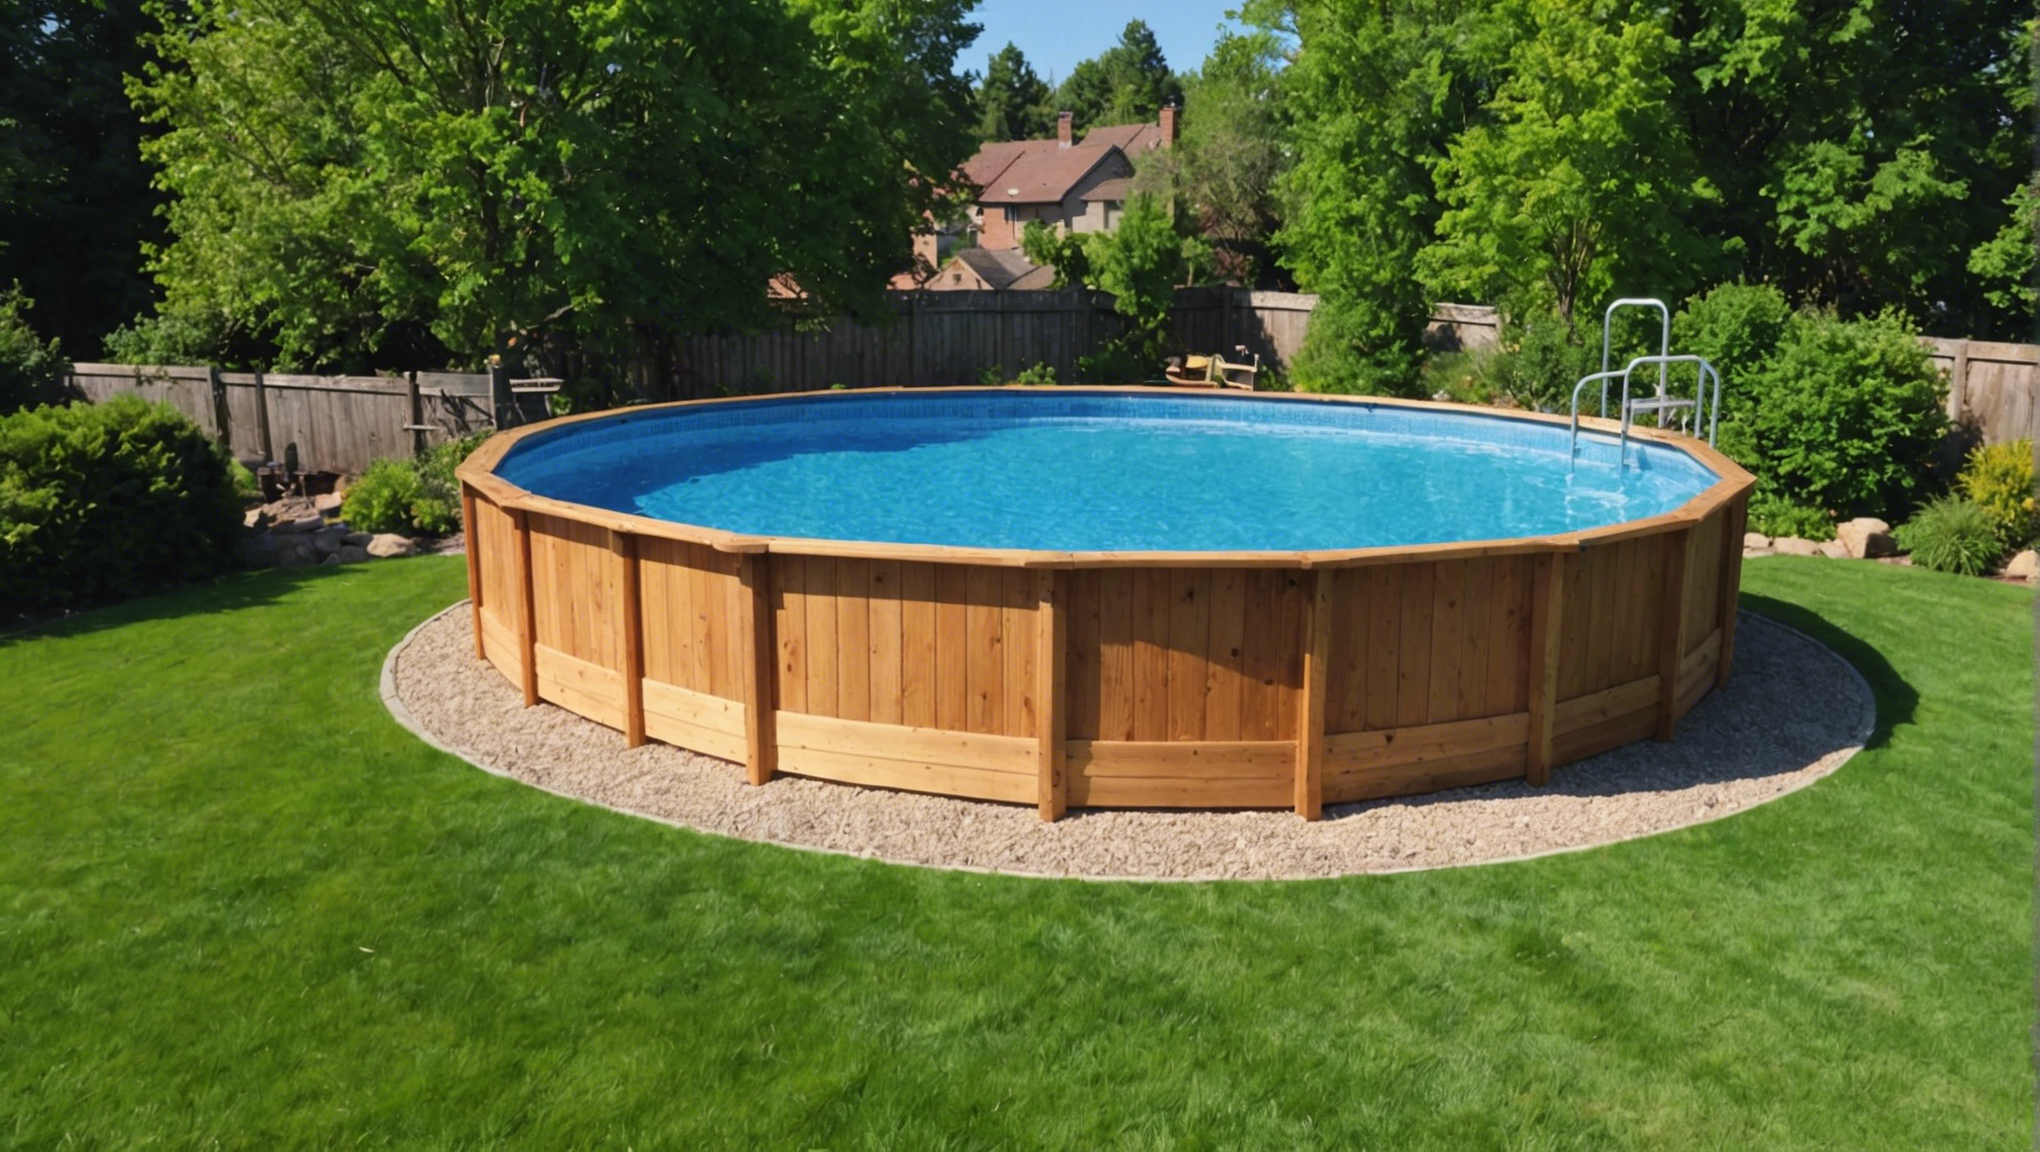 découvrez les avantages de choisir une piscine hors sol en bois pour votre jardin et profitez d'un espace de détente élégant et facile à installer pour toute la famille.